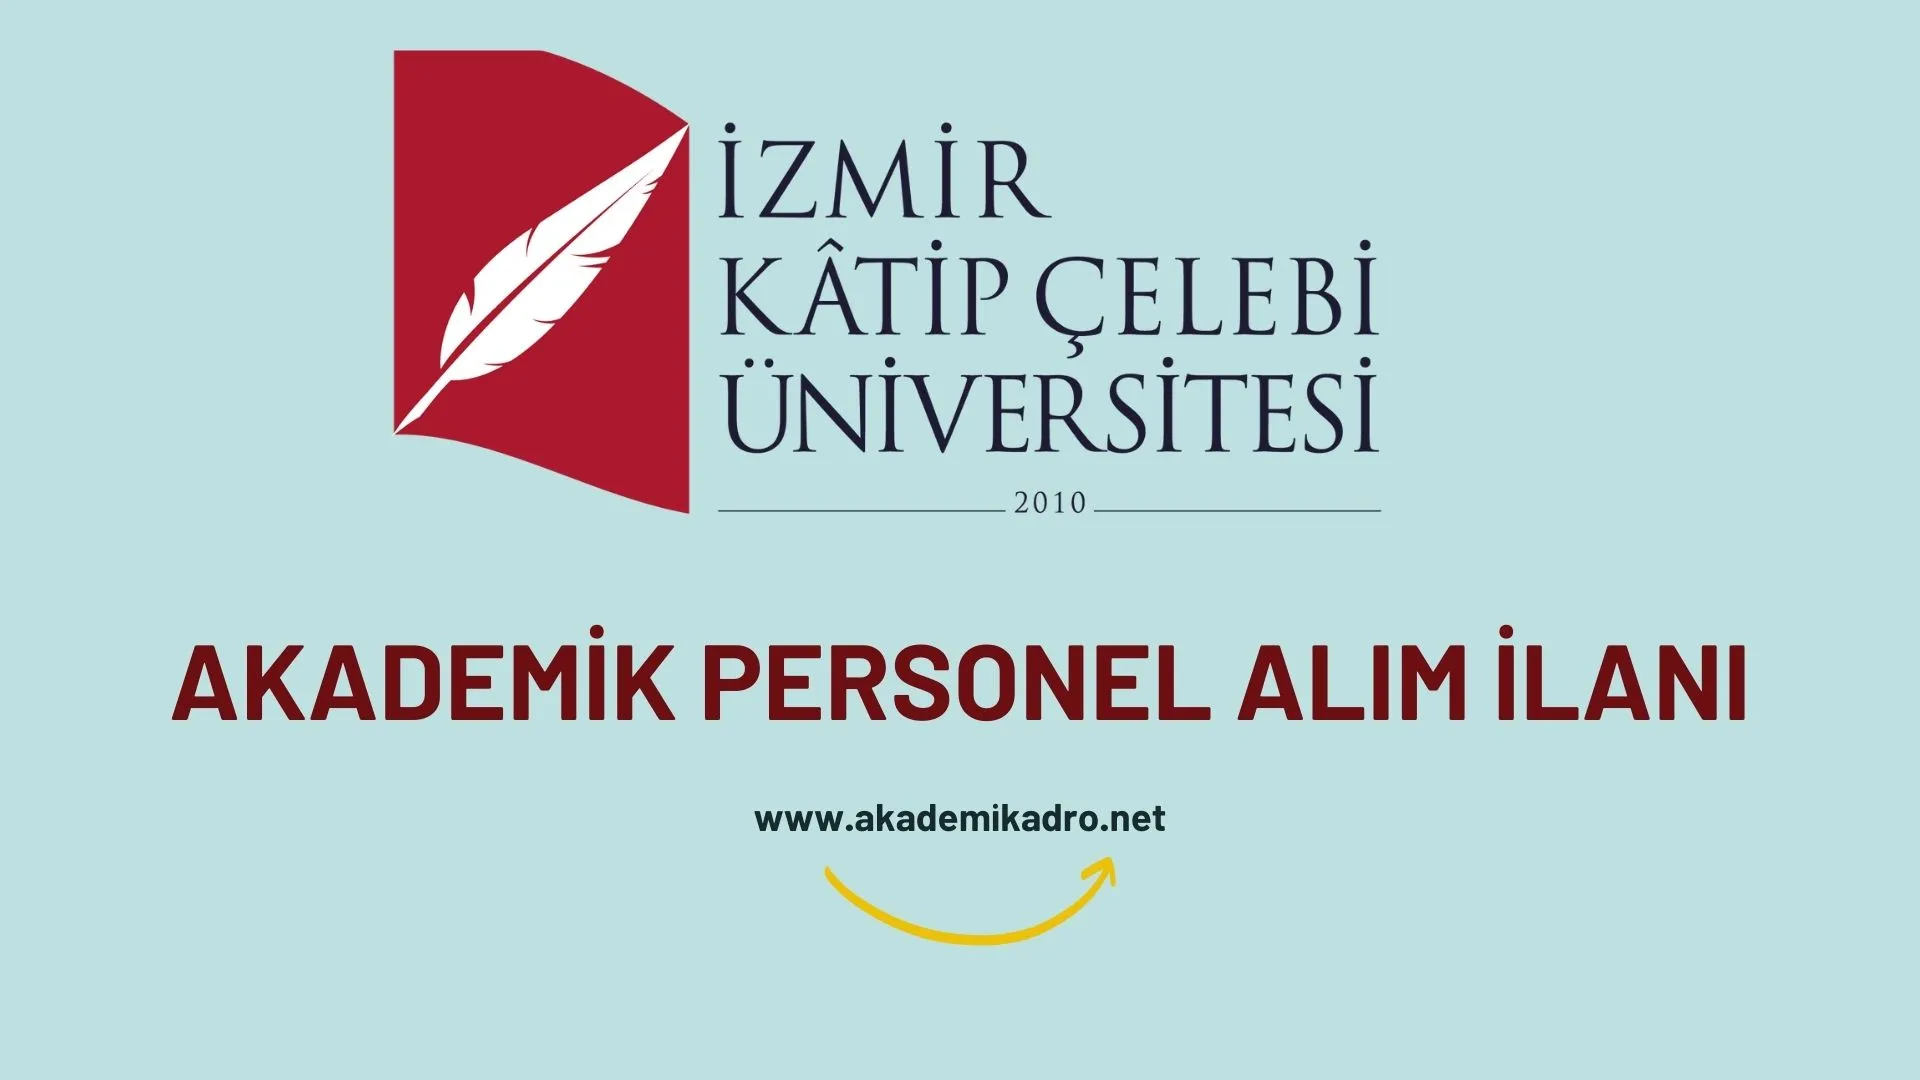 İzmir Katip Çelebi Üniversitesi birçok alandan 19 akademik personel alacak.Son başvuru tarihi 20 Aralık 2022.